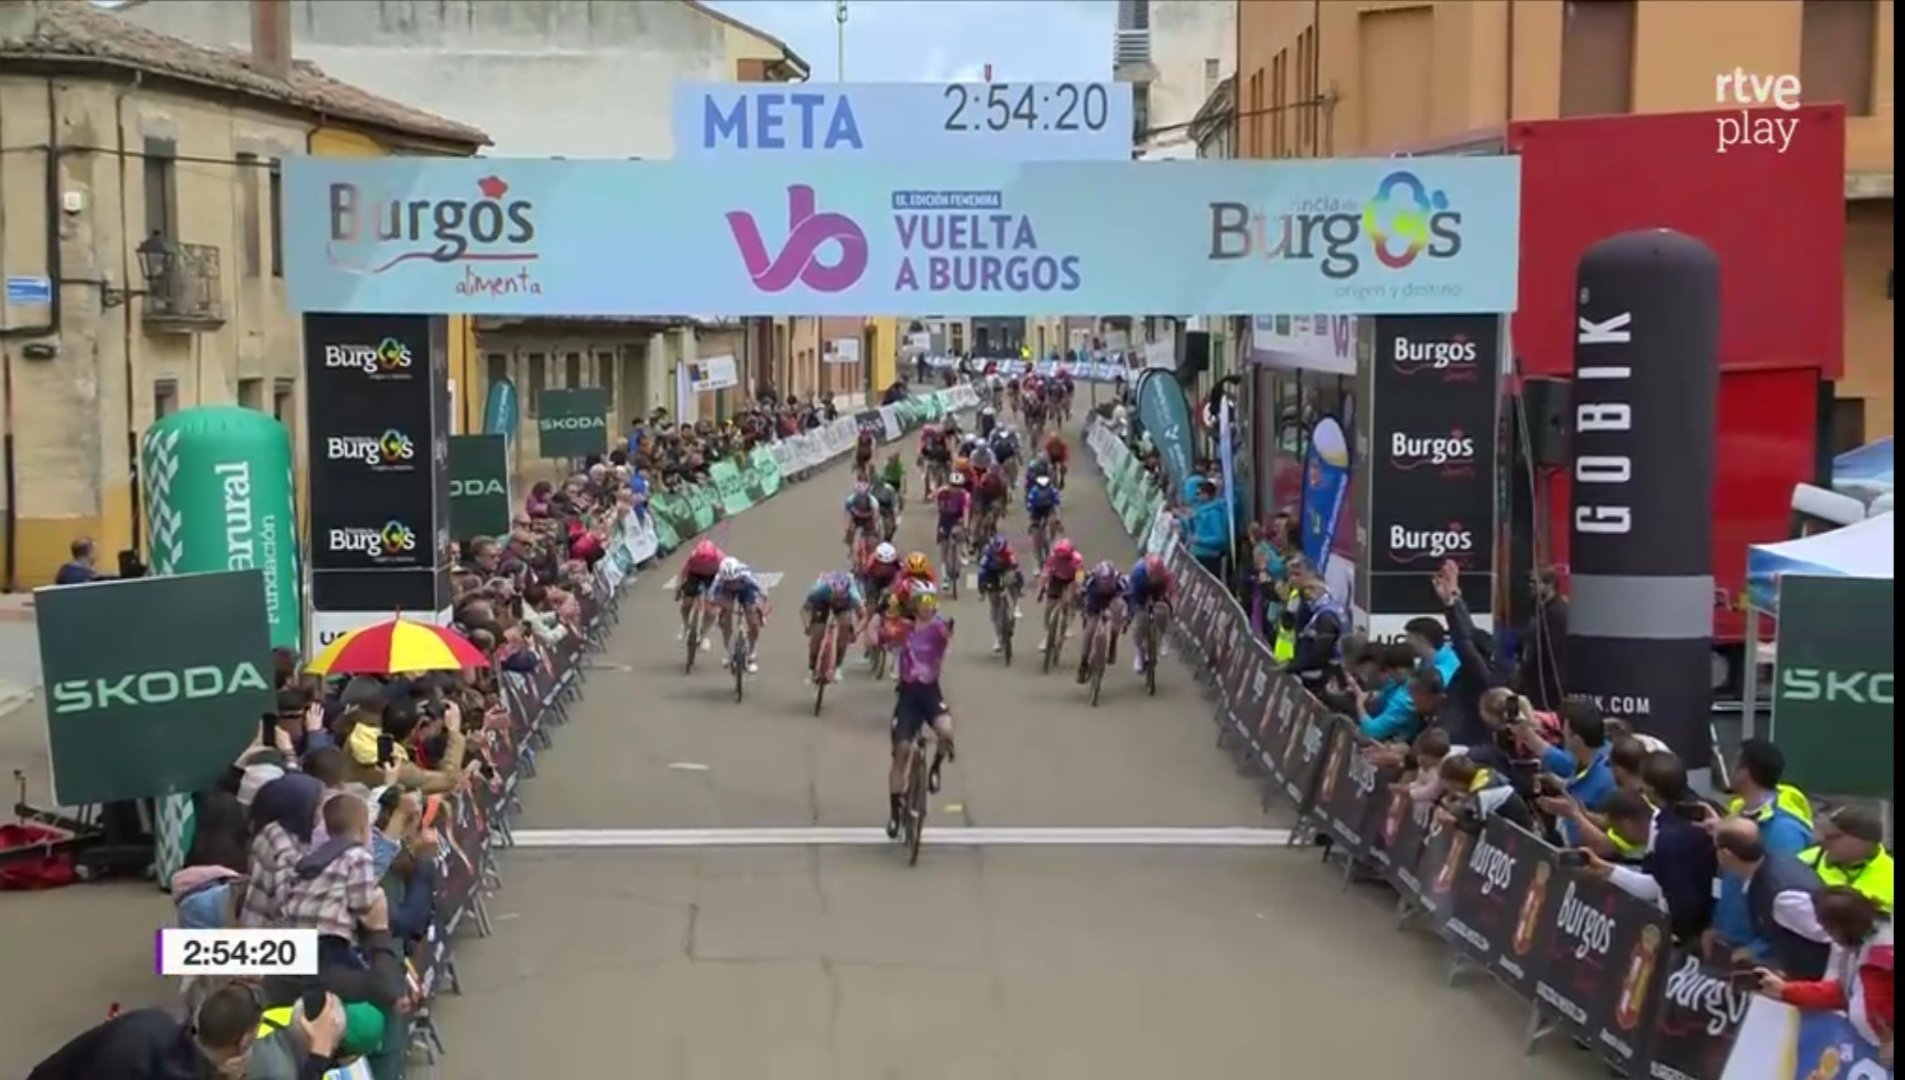 Classement de la 3ème étape de la Vuelta Burgos Feminas, remportée par Lorena Wiebes